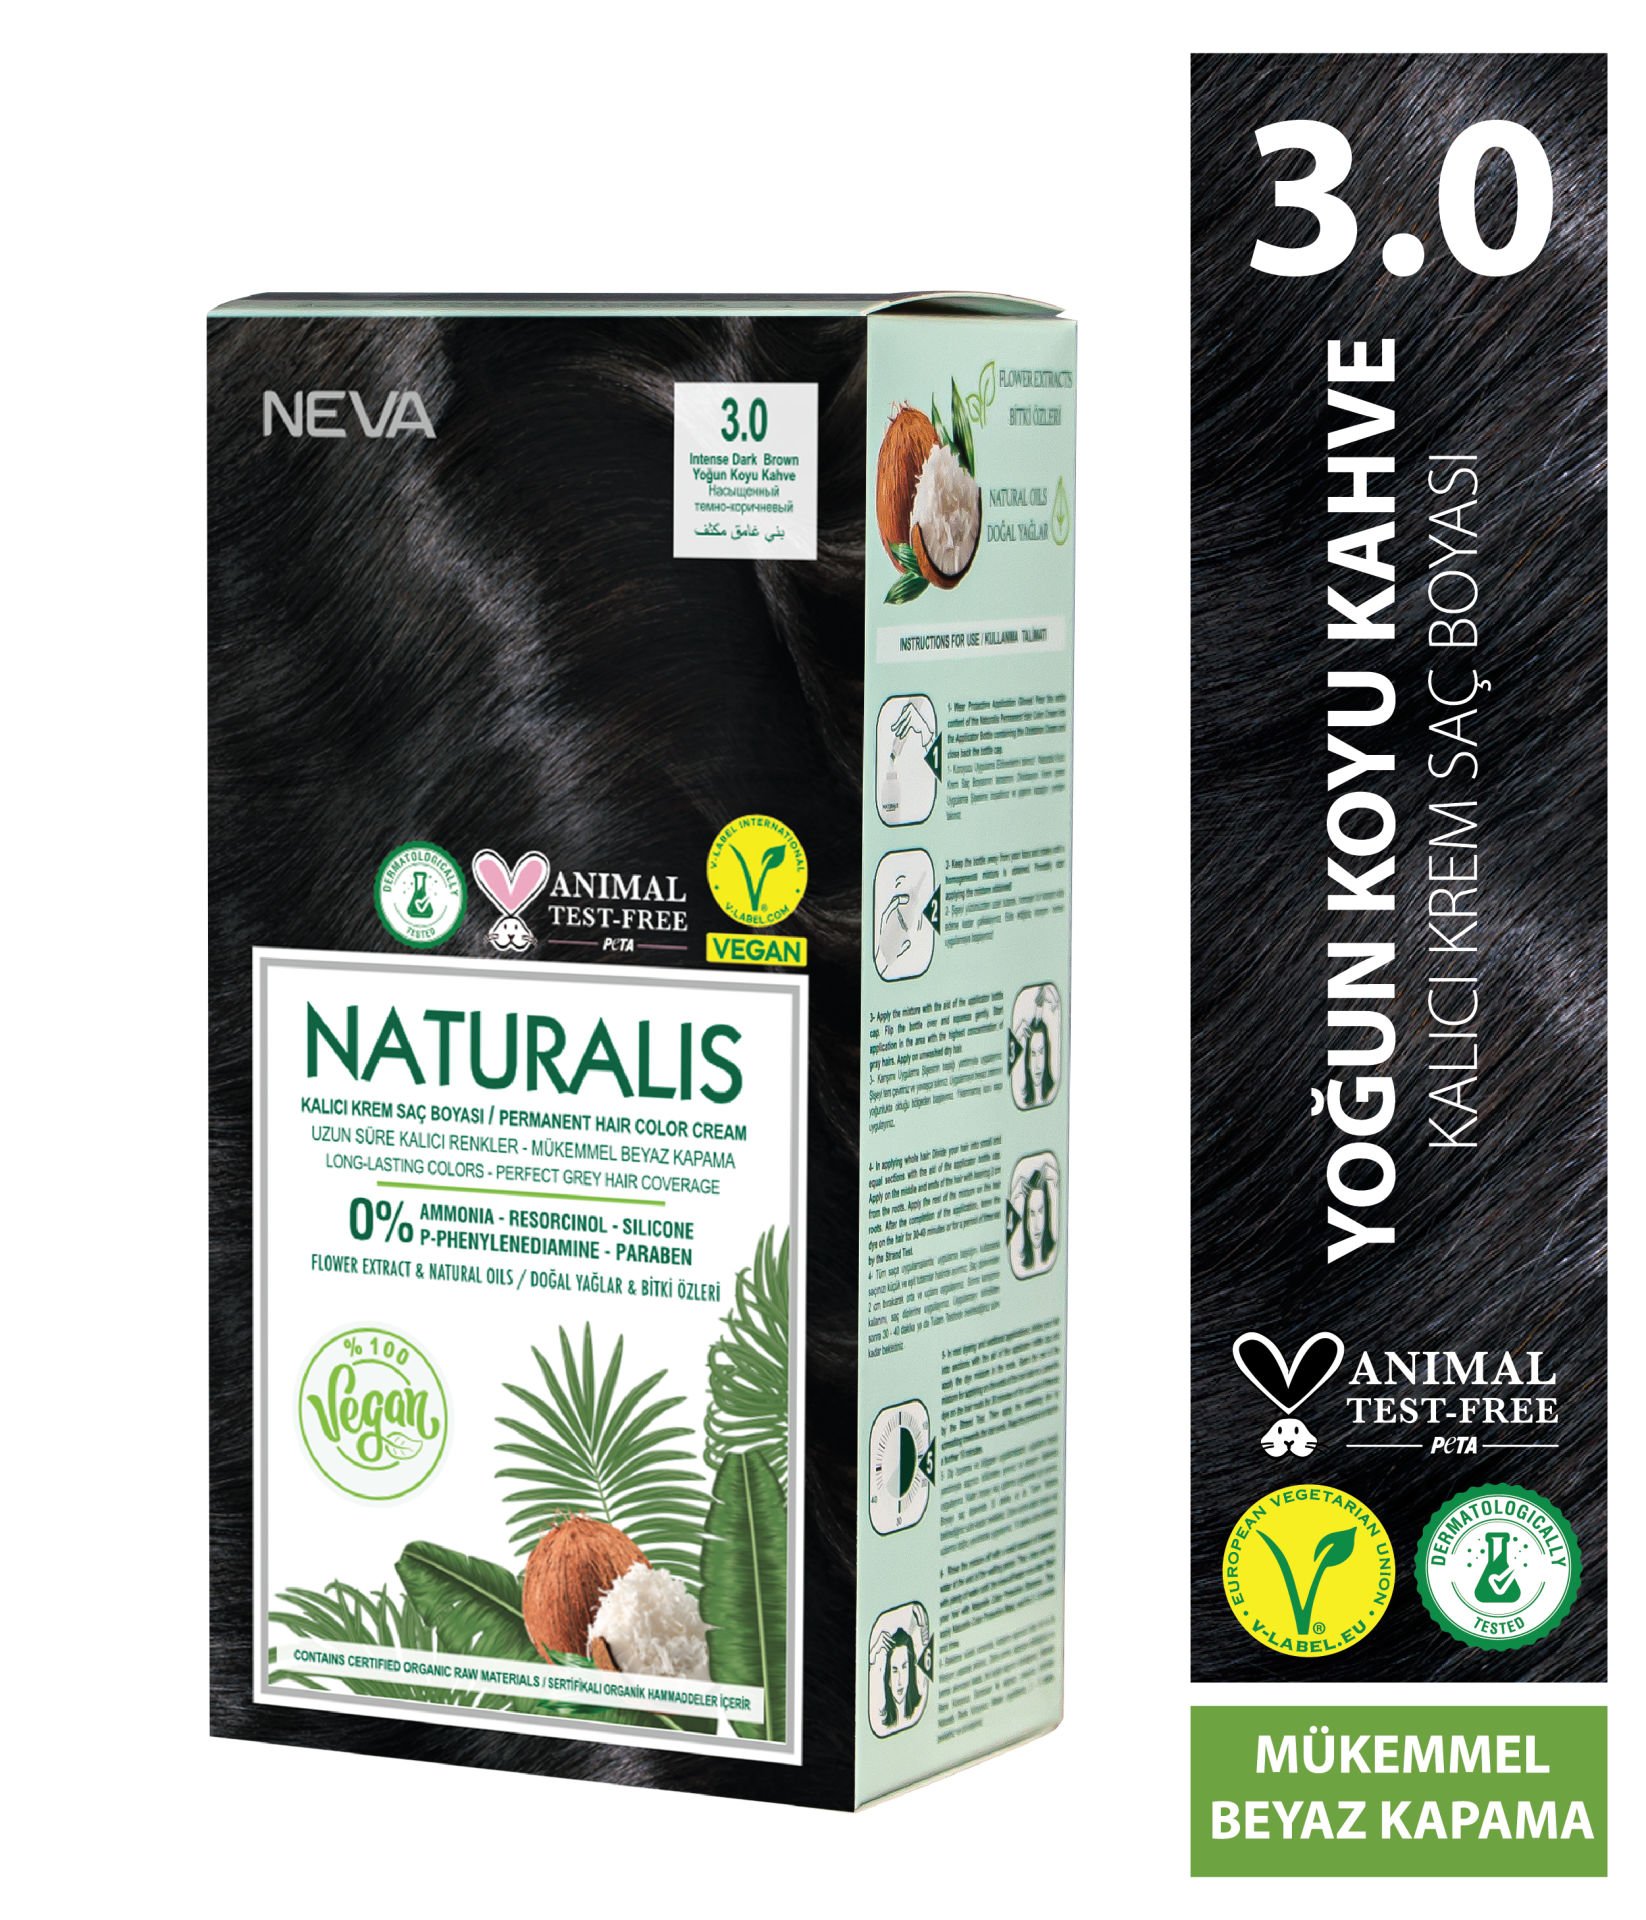 Nevacolor Naturalis Vegan Yoğun Koyu Kahve 3.0 Kalıcı Krem Saç Boyası Seti